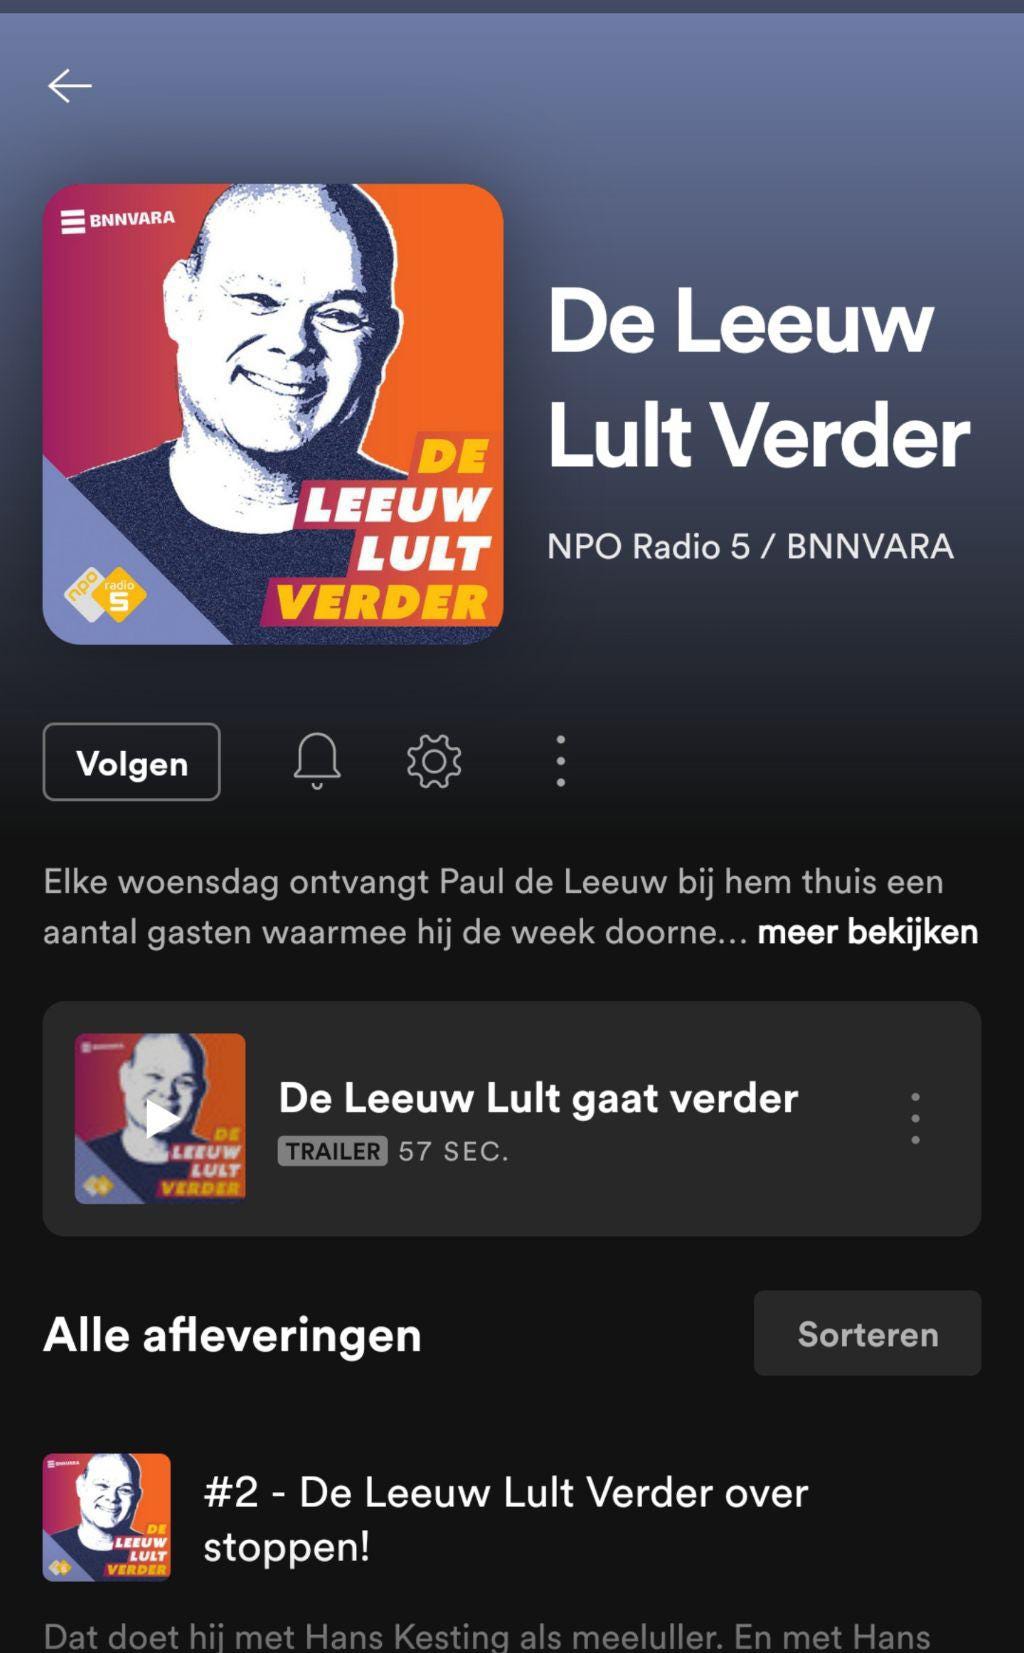 Screenshot van Spotify, de overzichtspagina van De Leeuw Lult Verder. Op het artwork zie je paul de leeuw, de titel en de logo's van NPO Radio 5 en BNNVARA